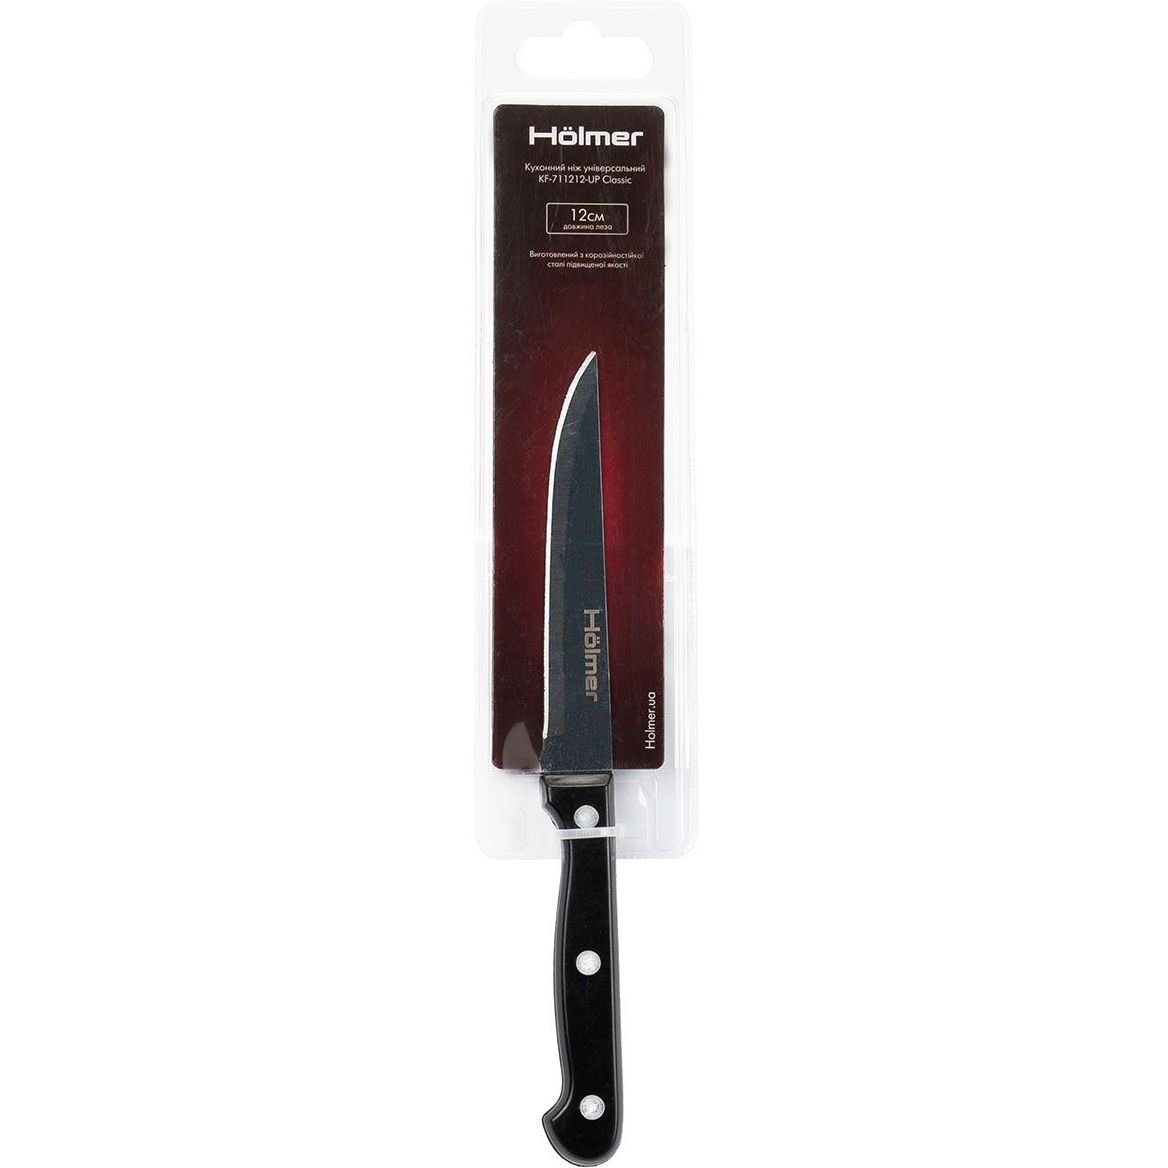 Кухонный нож Holmer KF-711212-UP Classic, универсальный, 1 шт. (KF-711212-UP Classic) - фото 2